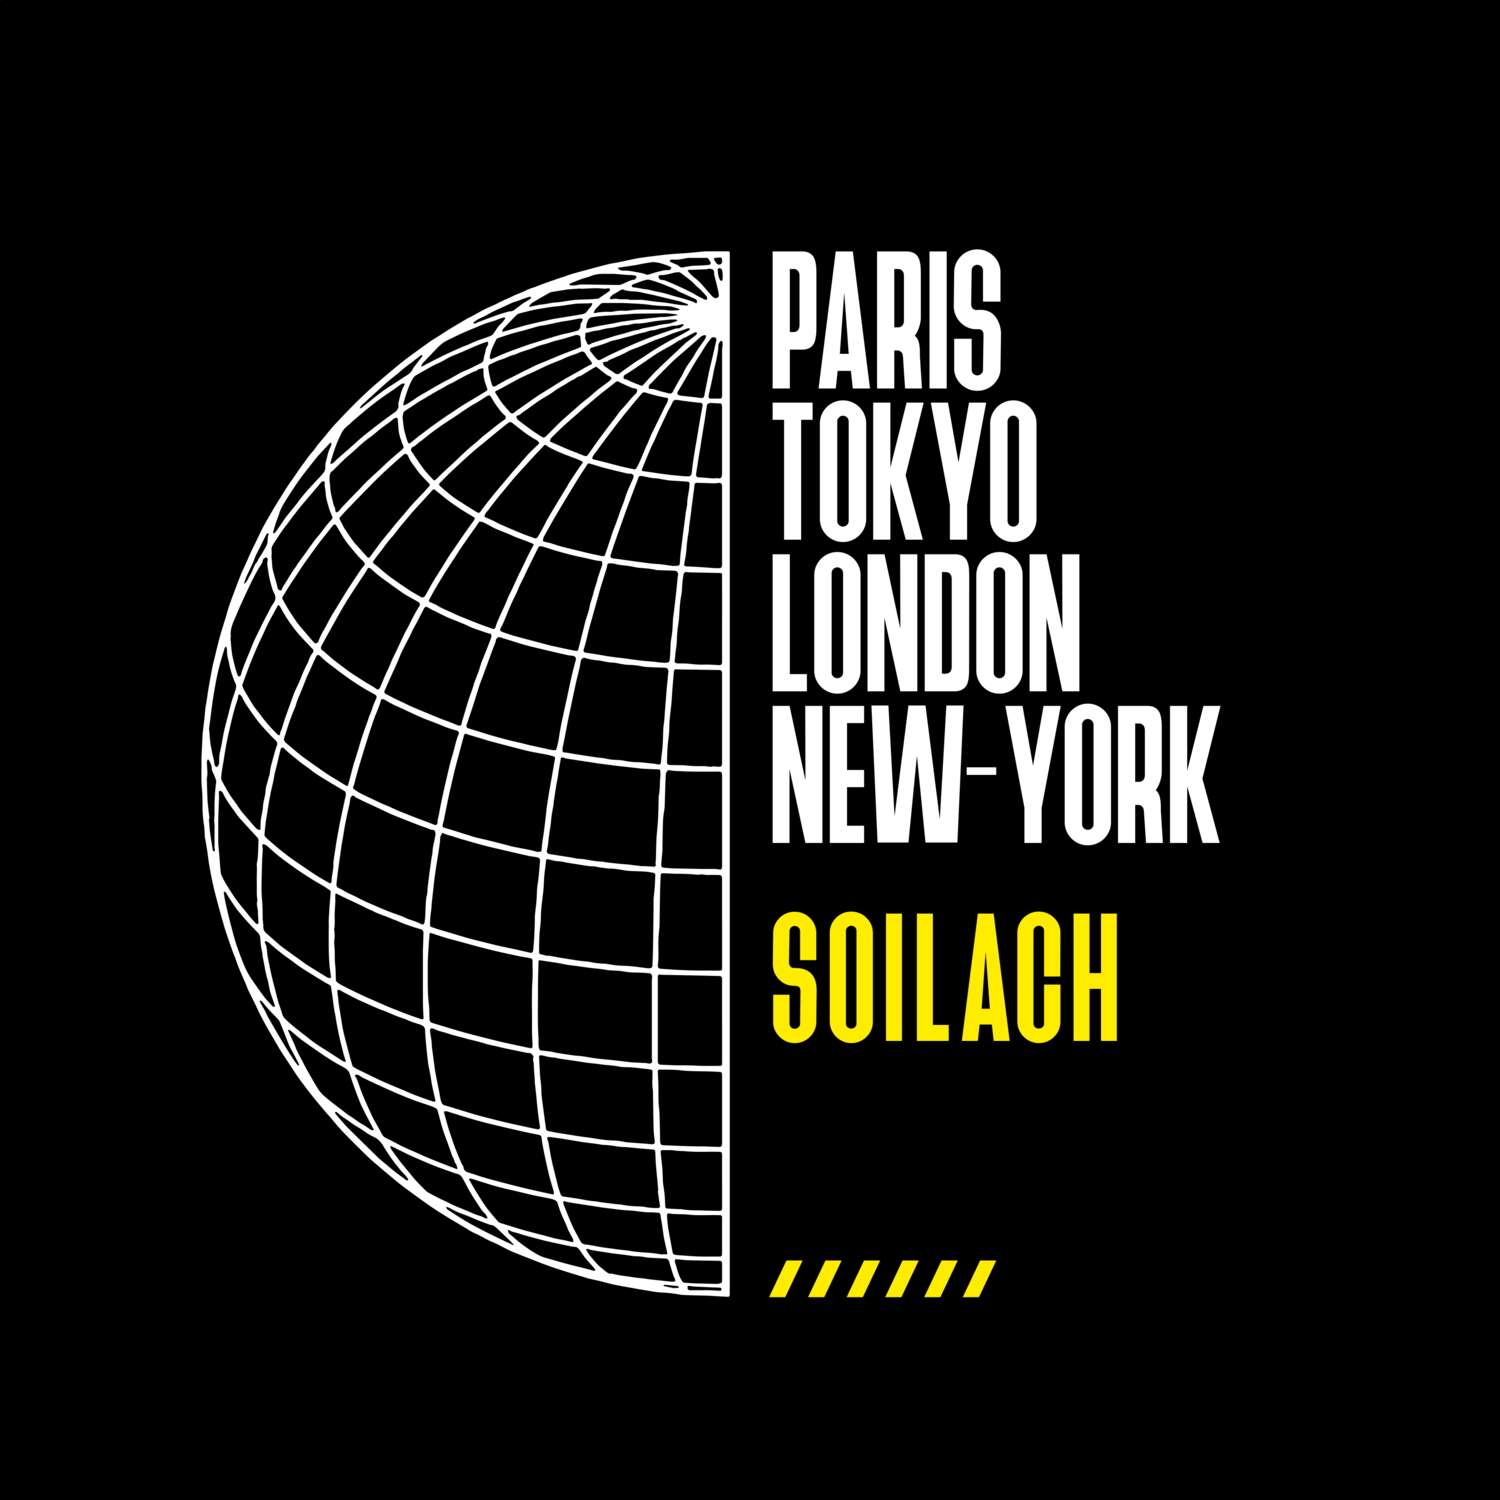 Soilach T-Shirt »Paris Tokyo London«